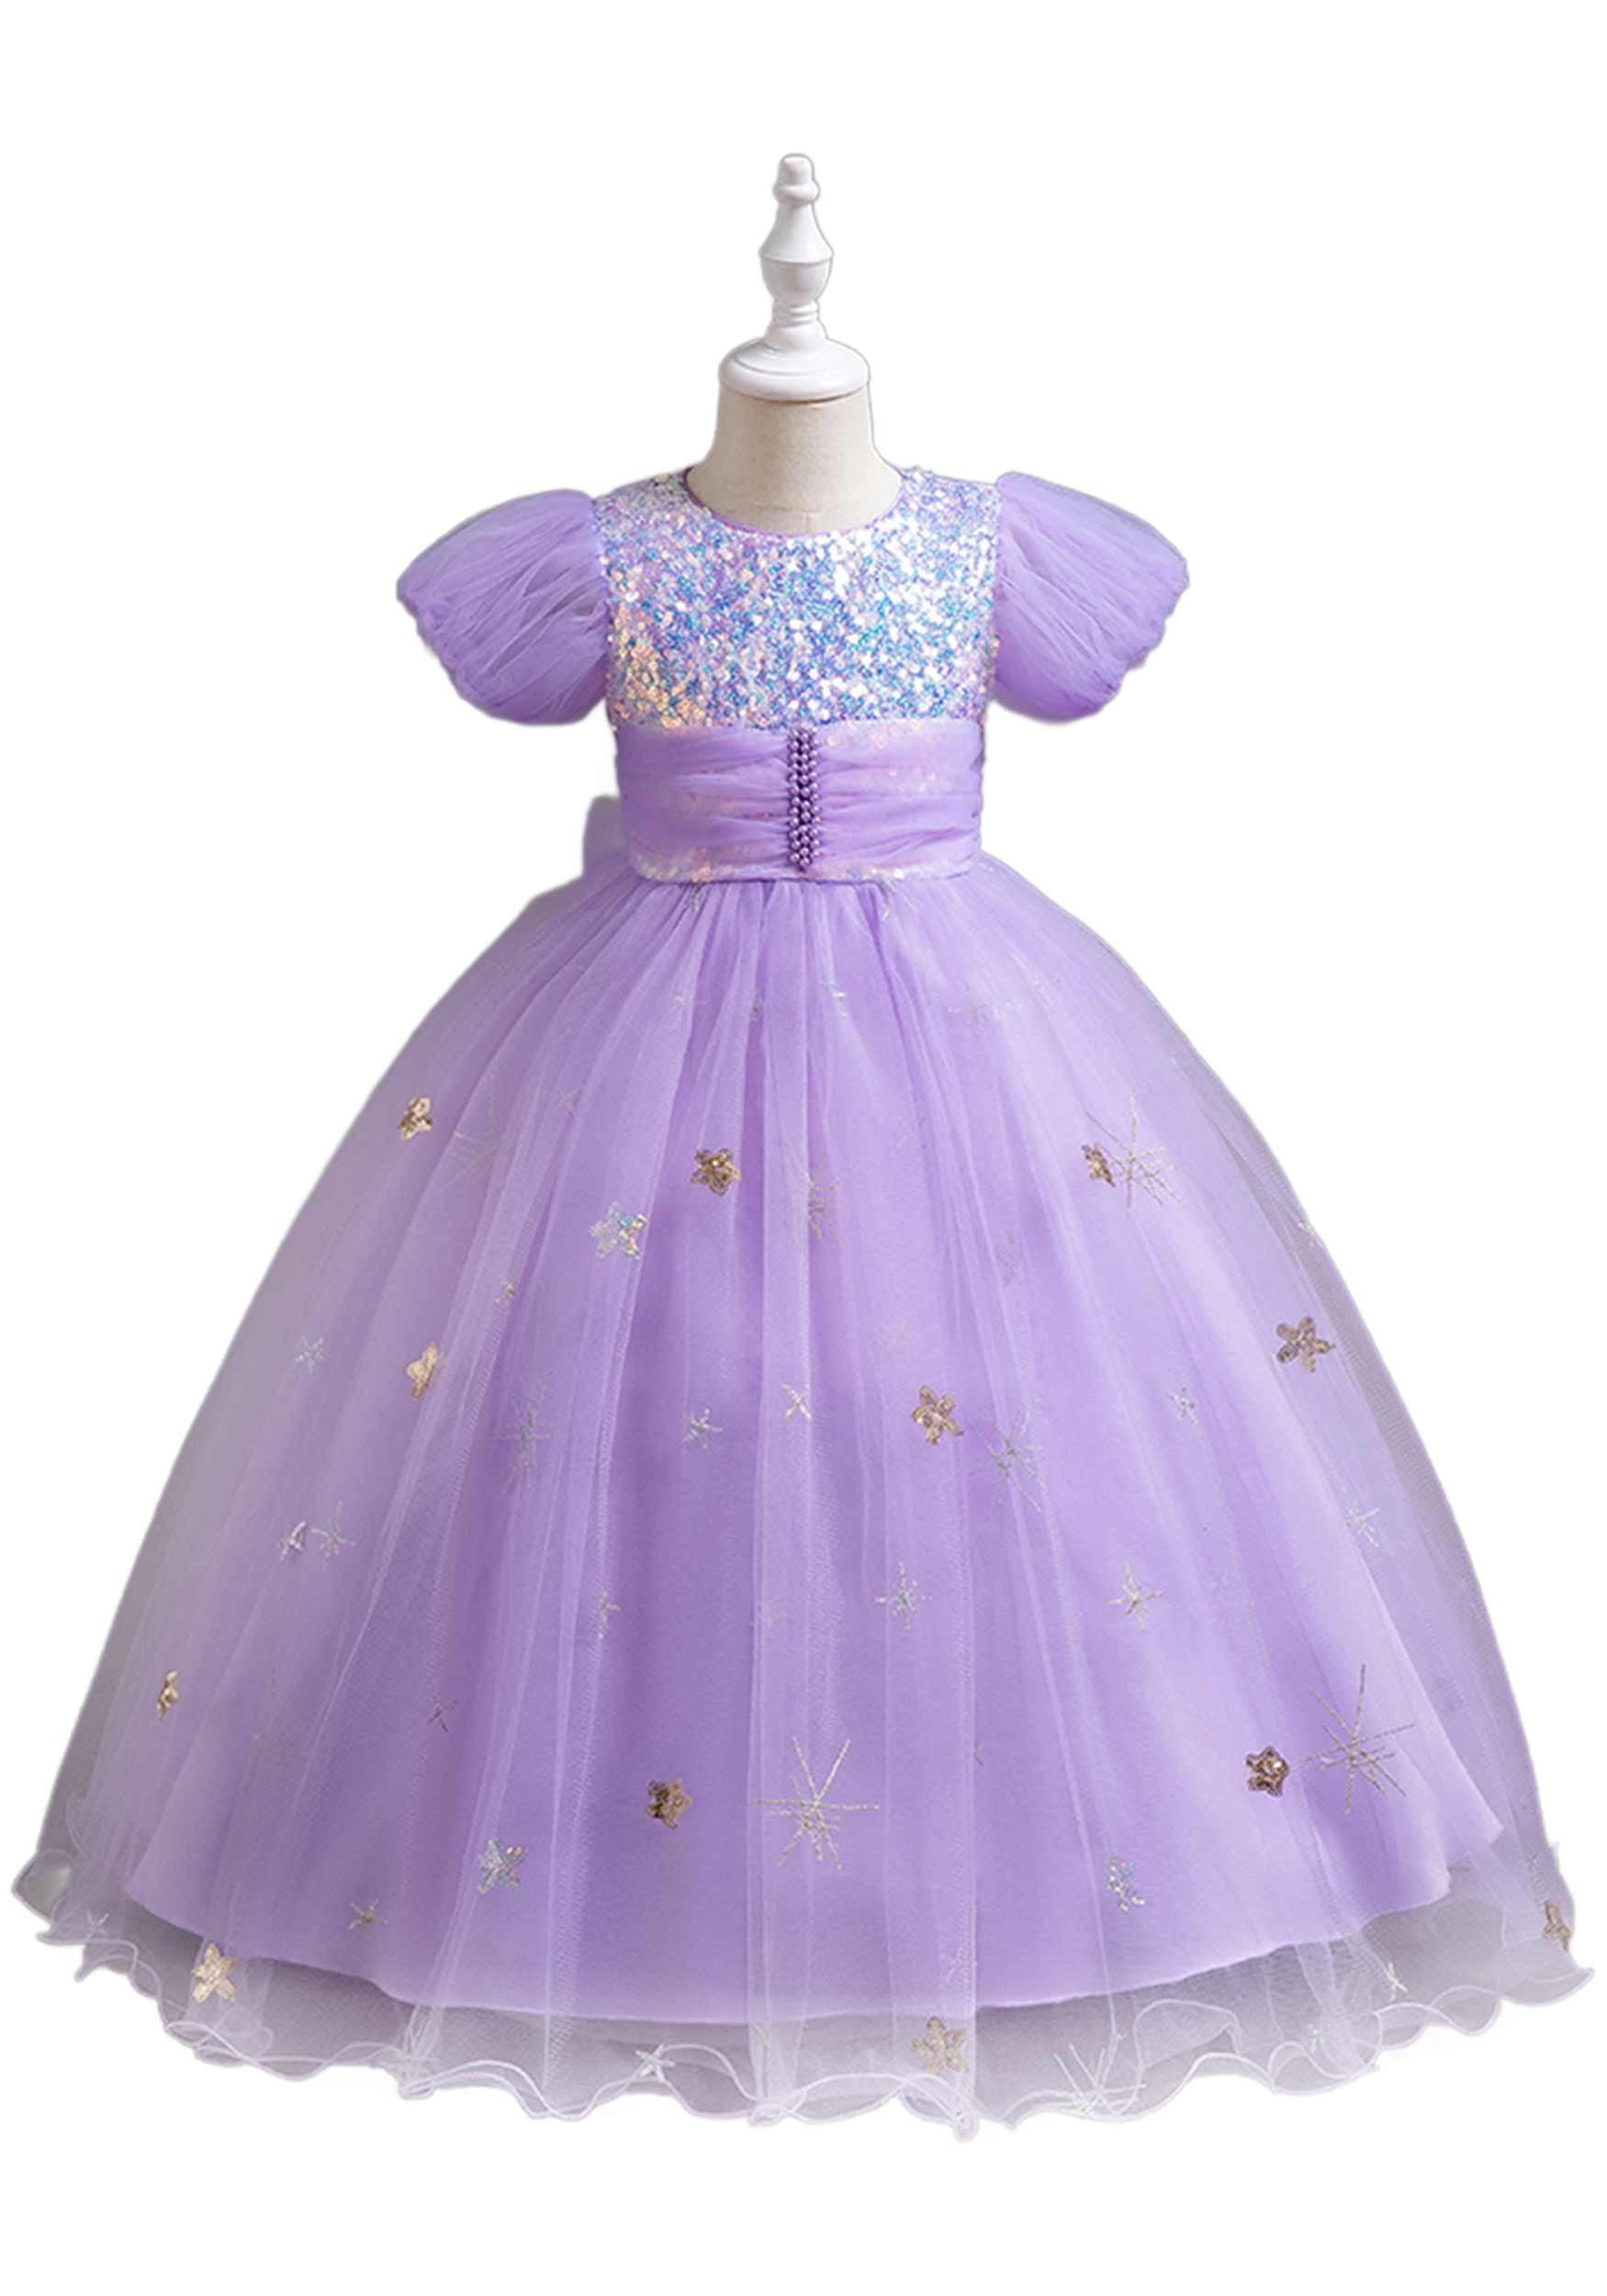 Daisred Abendkleid Tüllkleider Mädchen Prinzessinnenkleider Geburtstagsparty Lila